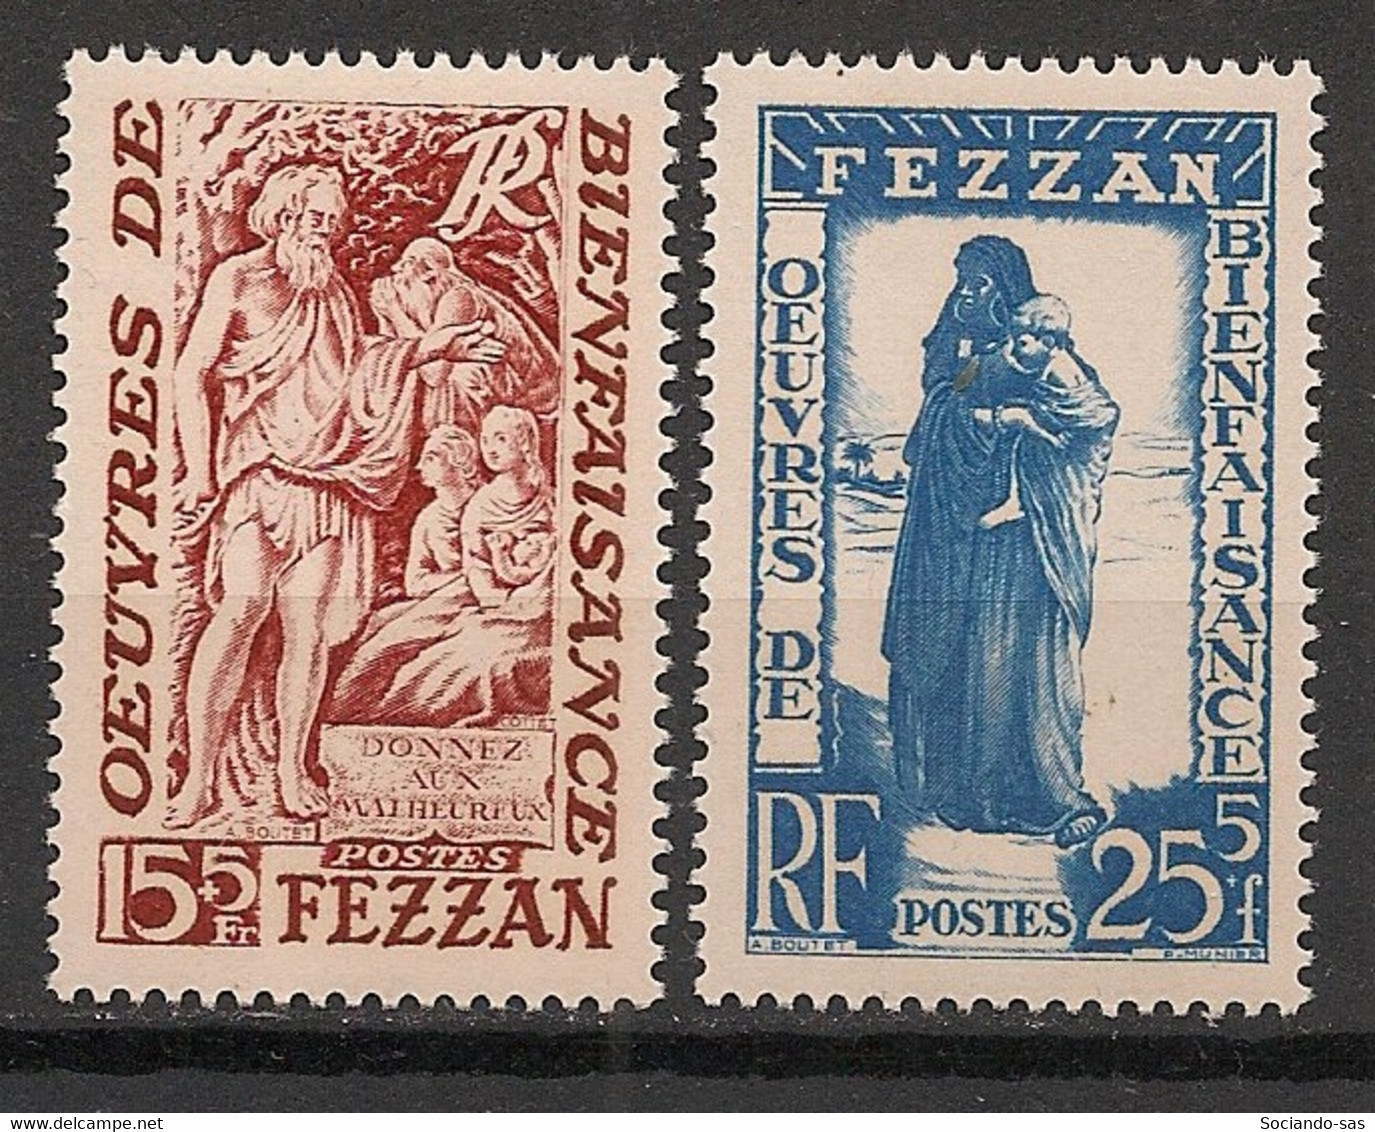 FEZZAN - 1950 - N°Yv. 54 à 55 - Série Complète - Neuf Luxe ** / MNH / Postfrisch - Ongebruikt